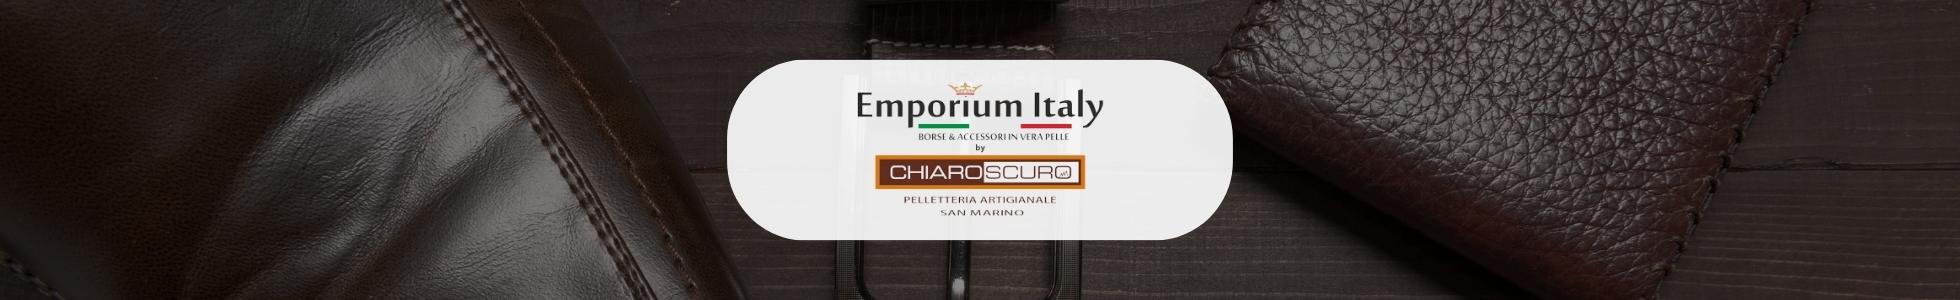 Emporium Italy - shop online accessori in pelle